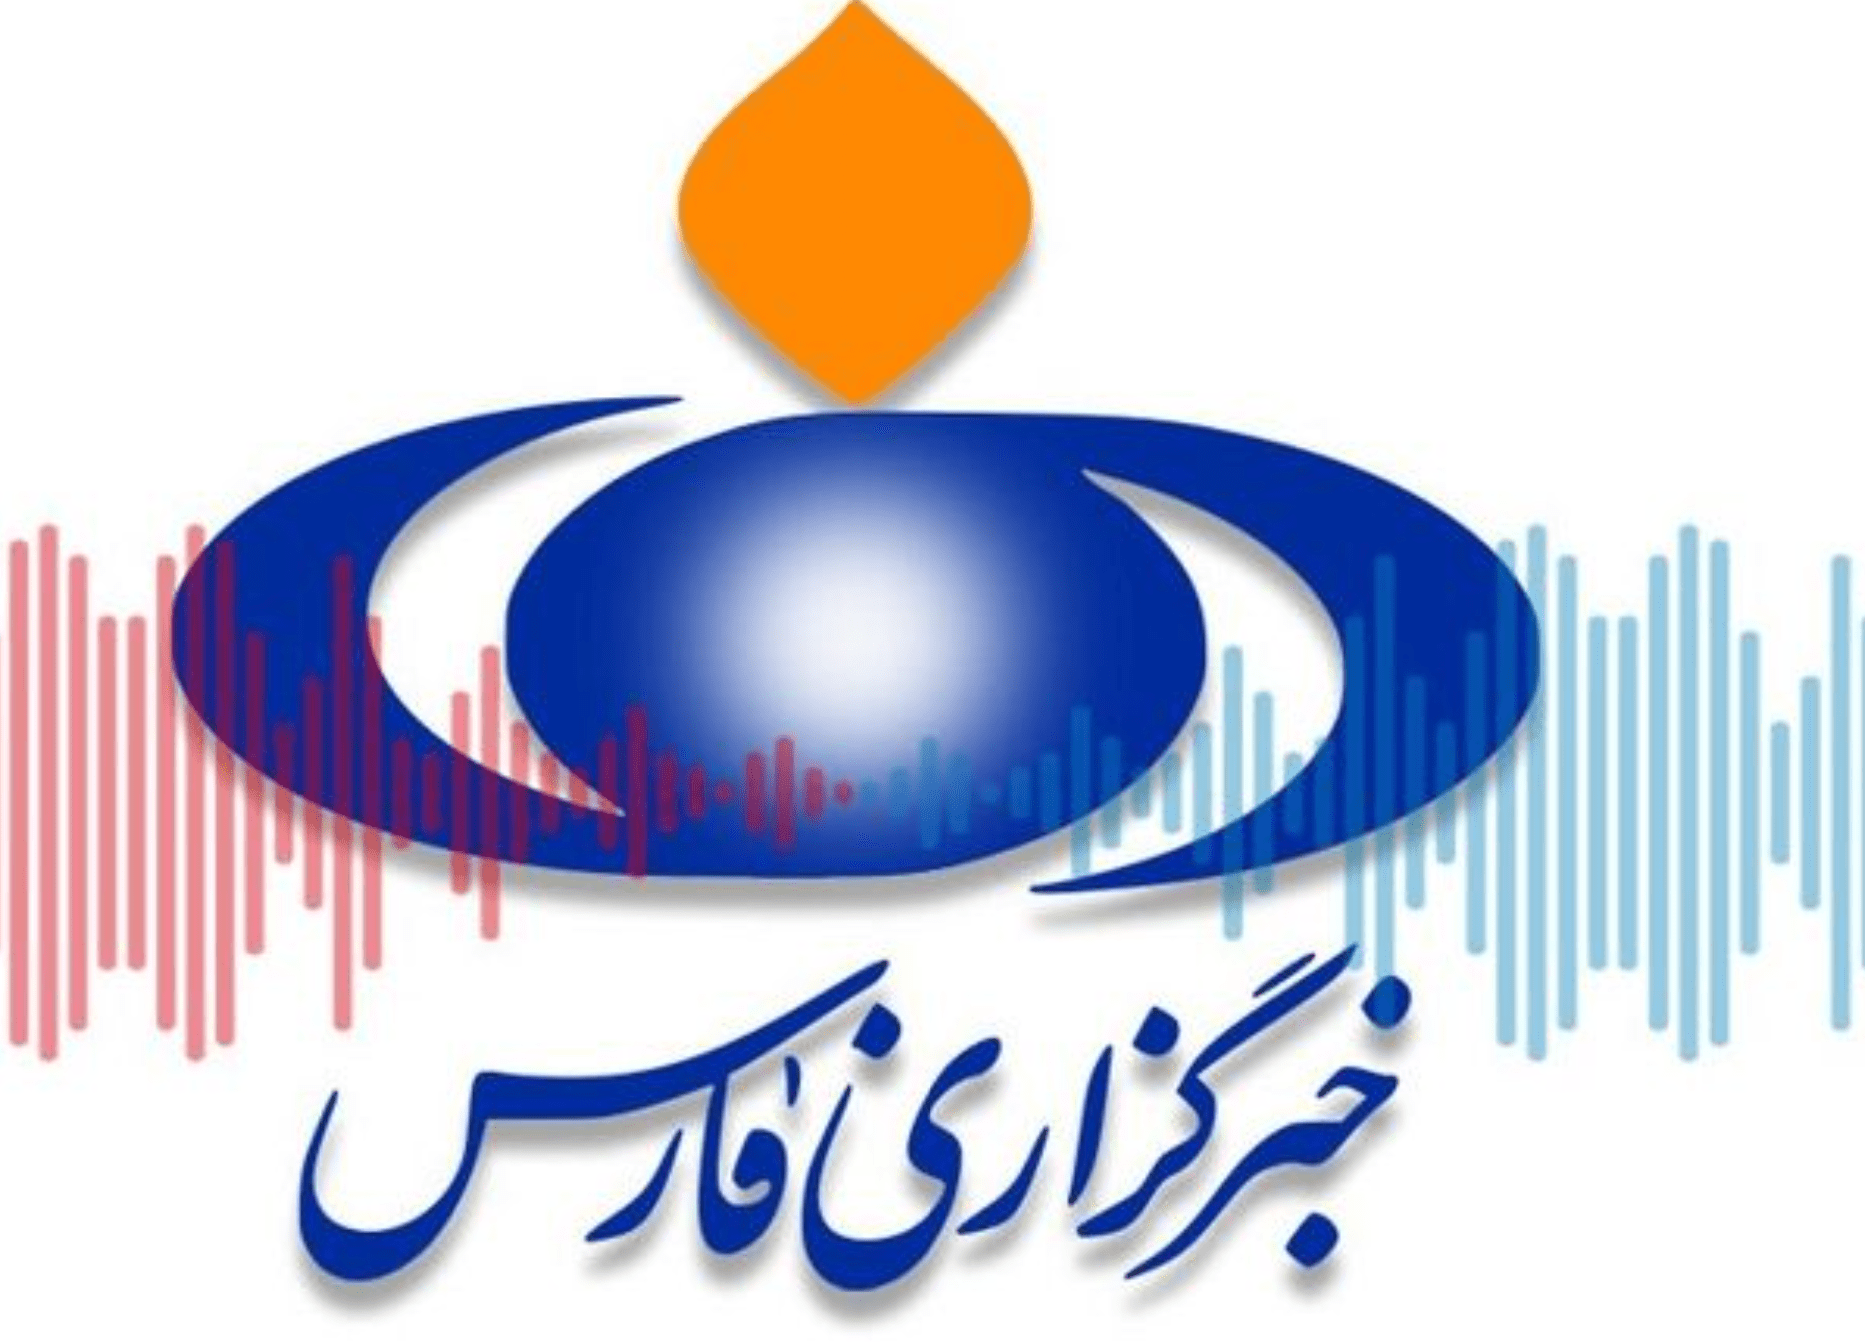 هک خبرگزاری فارس افشا کرد: ناکارآمدی و شکست نیروهای سرکوبگر جمهوری اسلامی